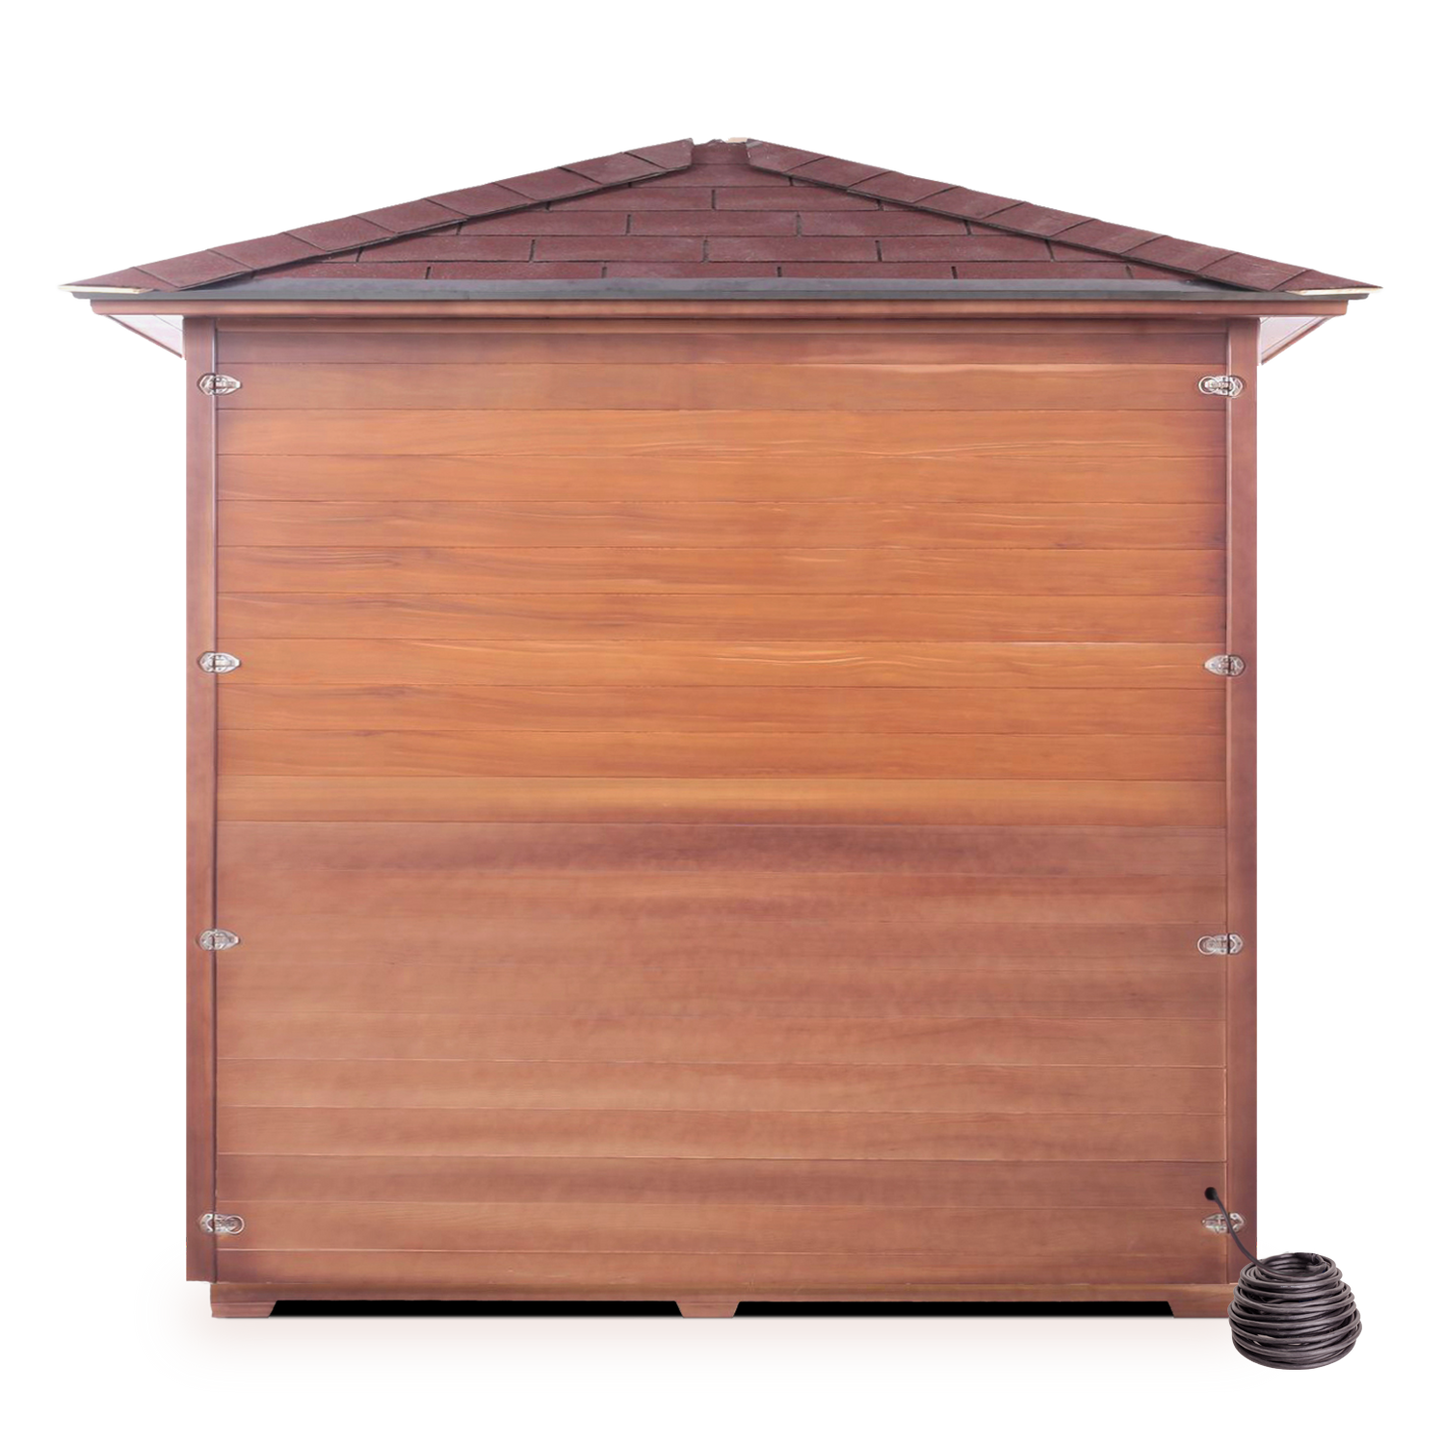 Enlighten Sauna - SIERRA 5 Full Spectrum Infrared Indoor or Outdoor Sauna